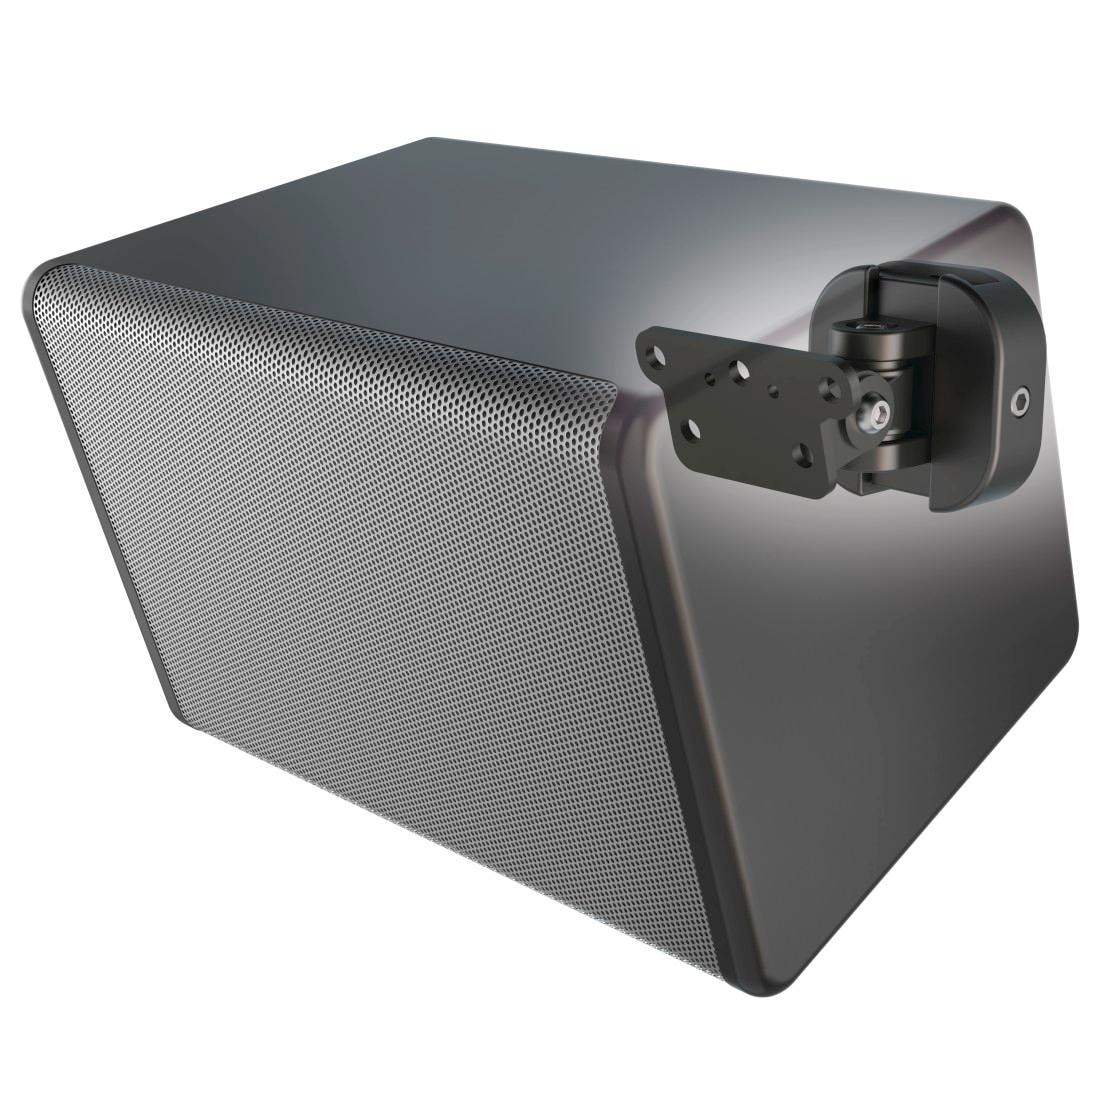 Hama Lautsprecher-Wandhalterung »Wandhalterung für Wireless Lautsprecher, voll beweglich, Schwarz«, - Neigung +/-: 85 / 85 °
- Schwenkbereich: 130 °